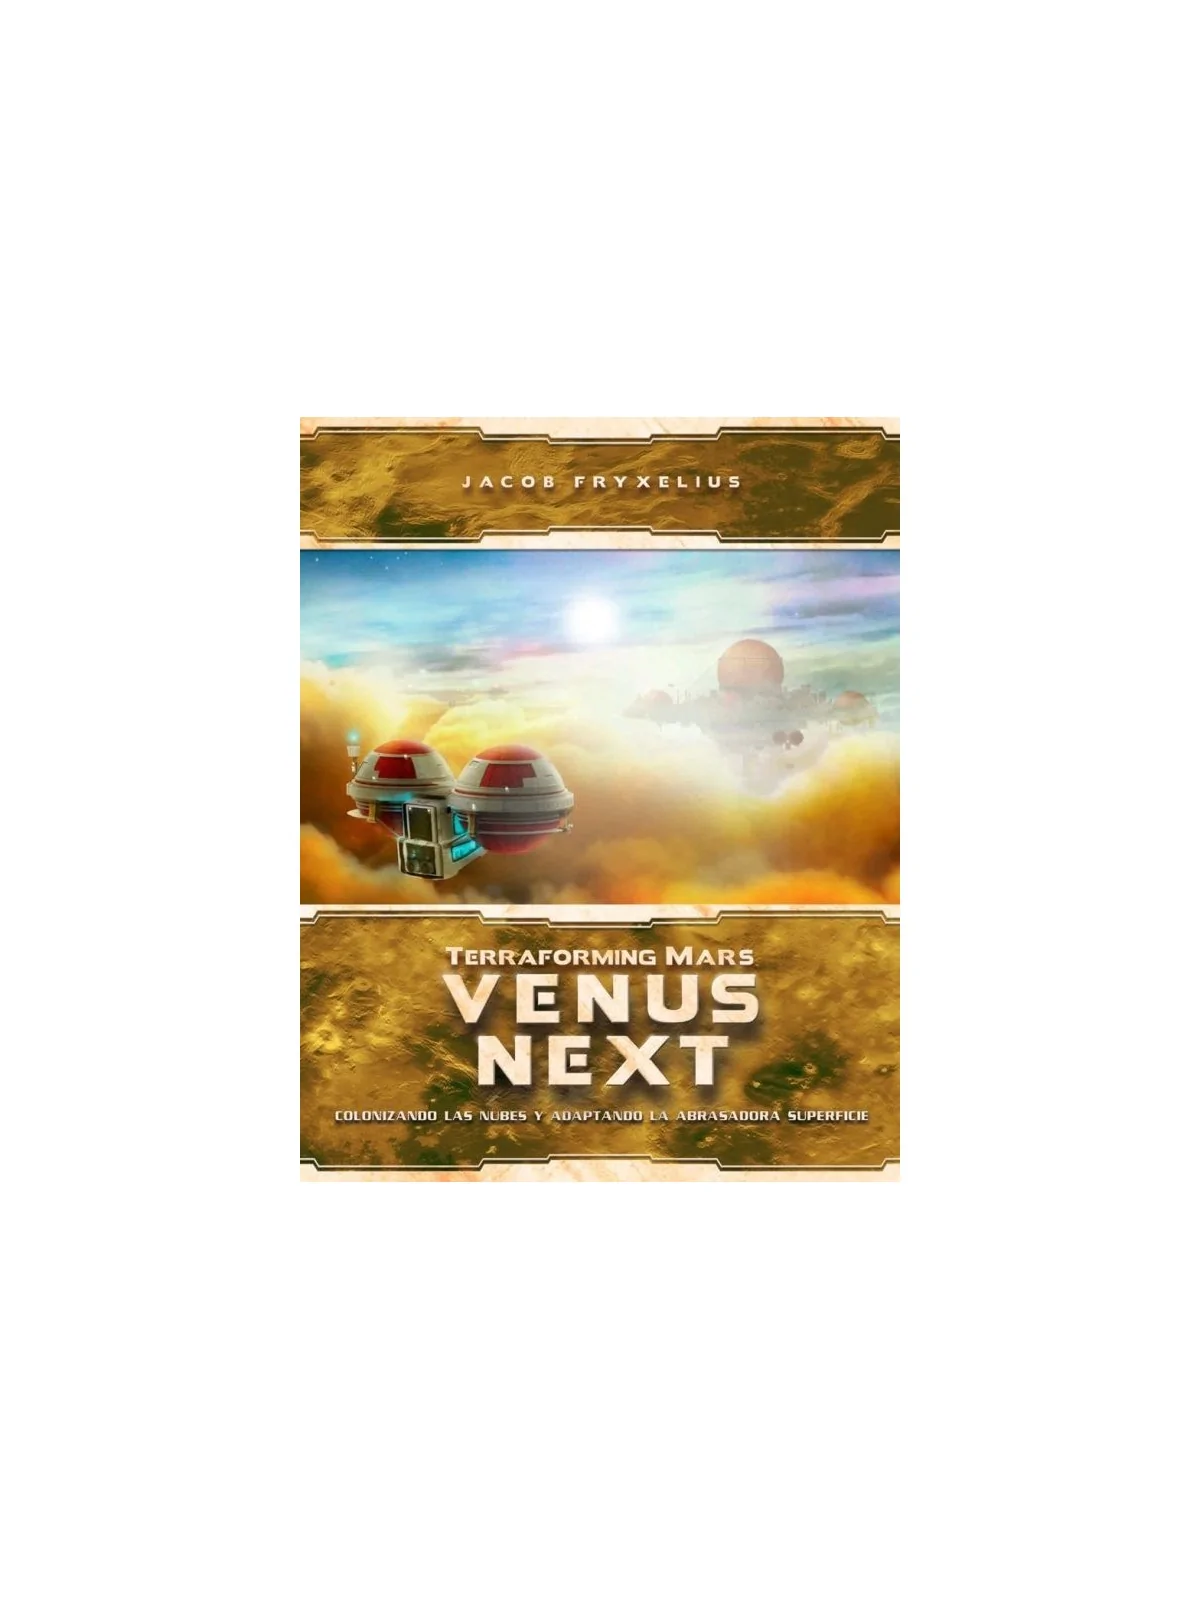 Comprar Terraforming Mars: Venus Next (Portugués) barato al mejor prec